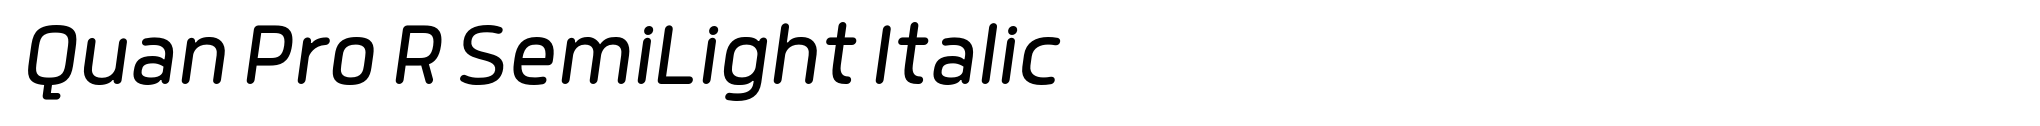 Quan Pro R SemiLight Italic image